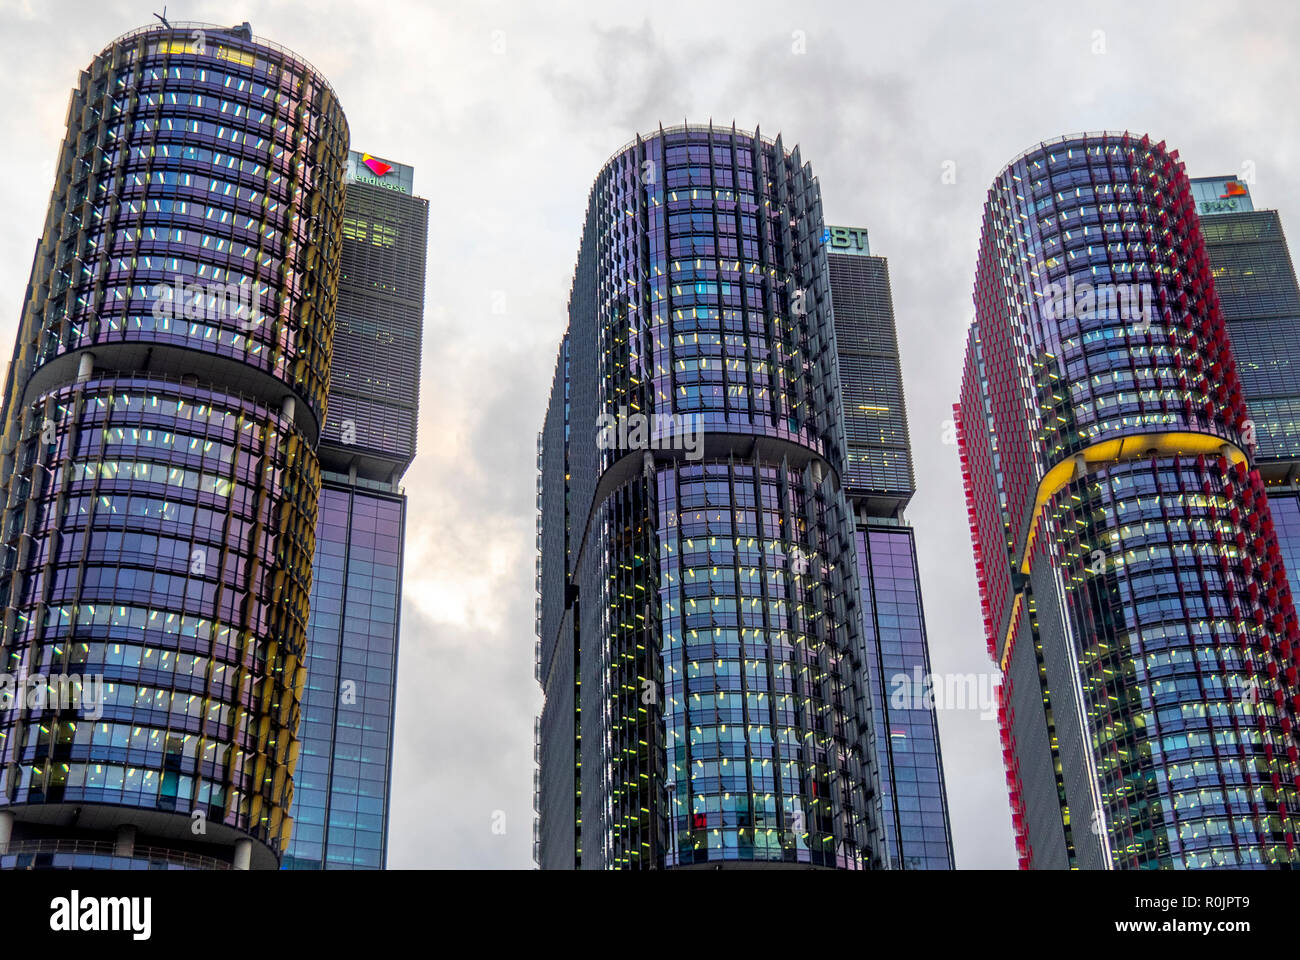 Barangaroo torres comerciales edificios altos con oficinas en Sydney, NSW, Australia. Foto de stock